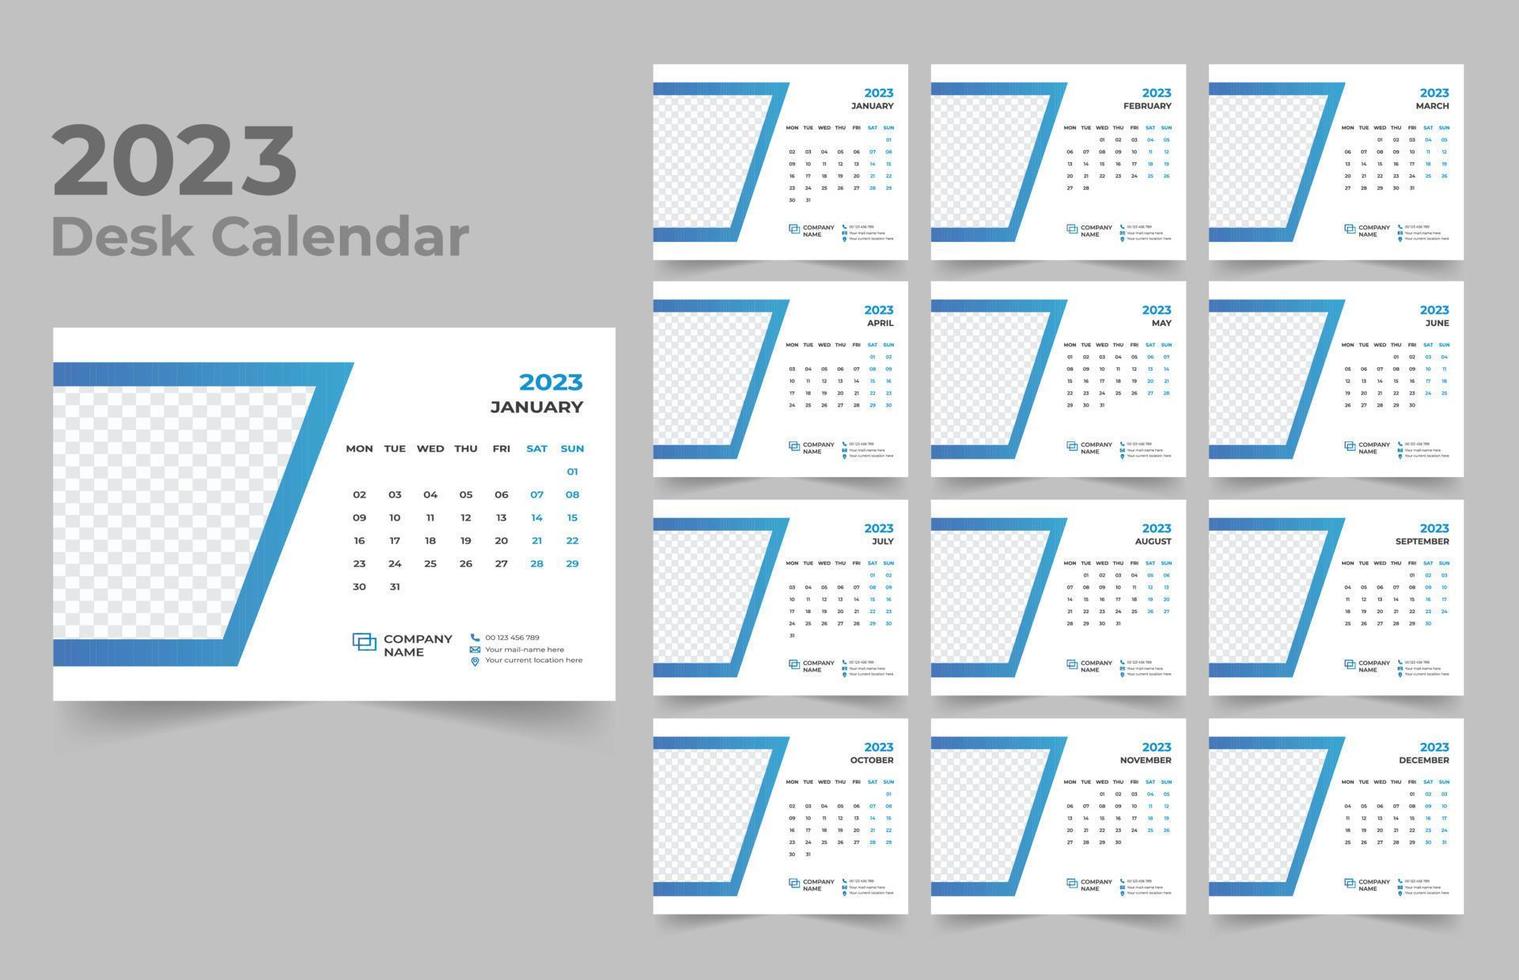 bureau kalender 2023 sjabloon ontwerp vector